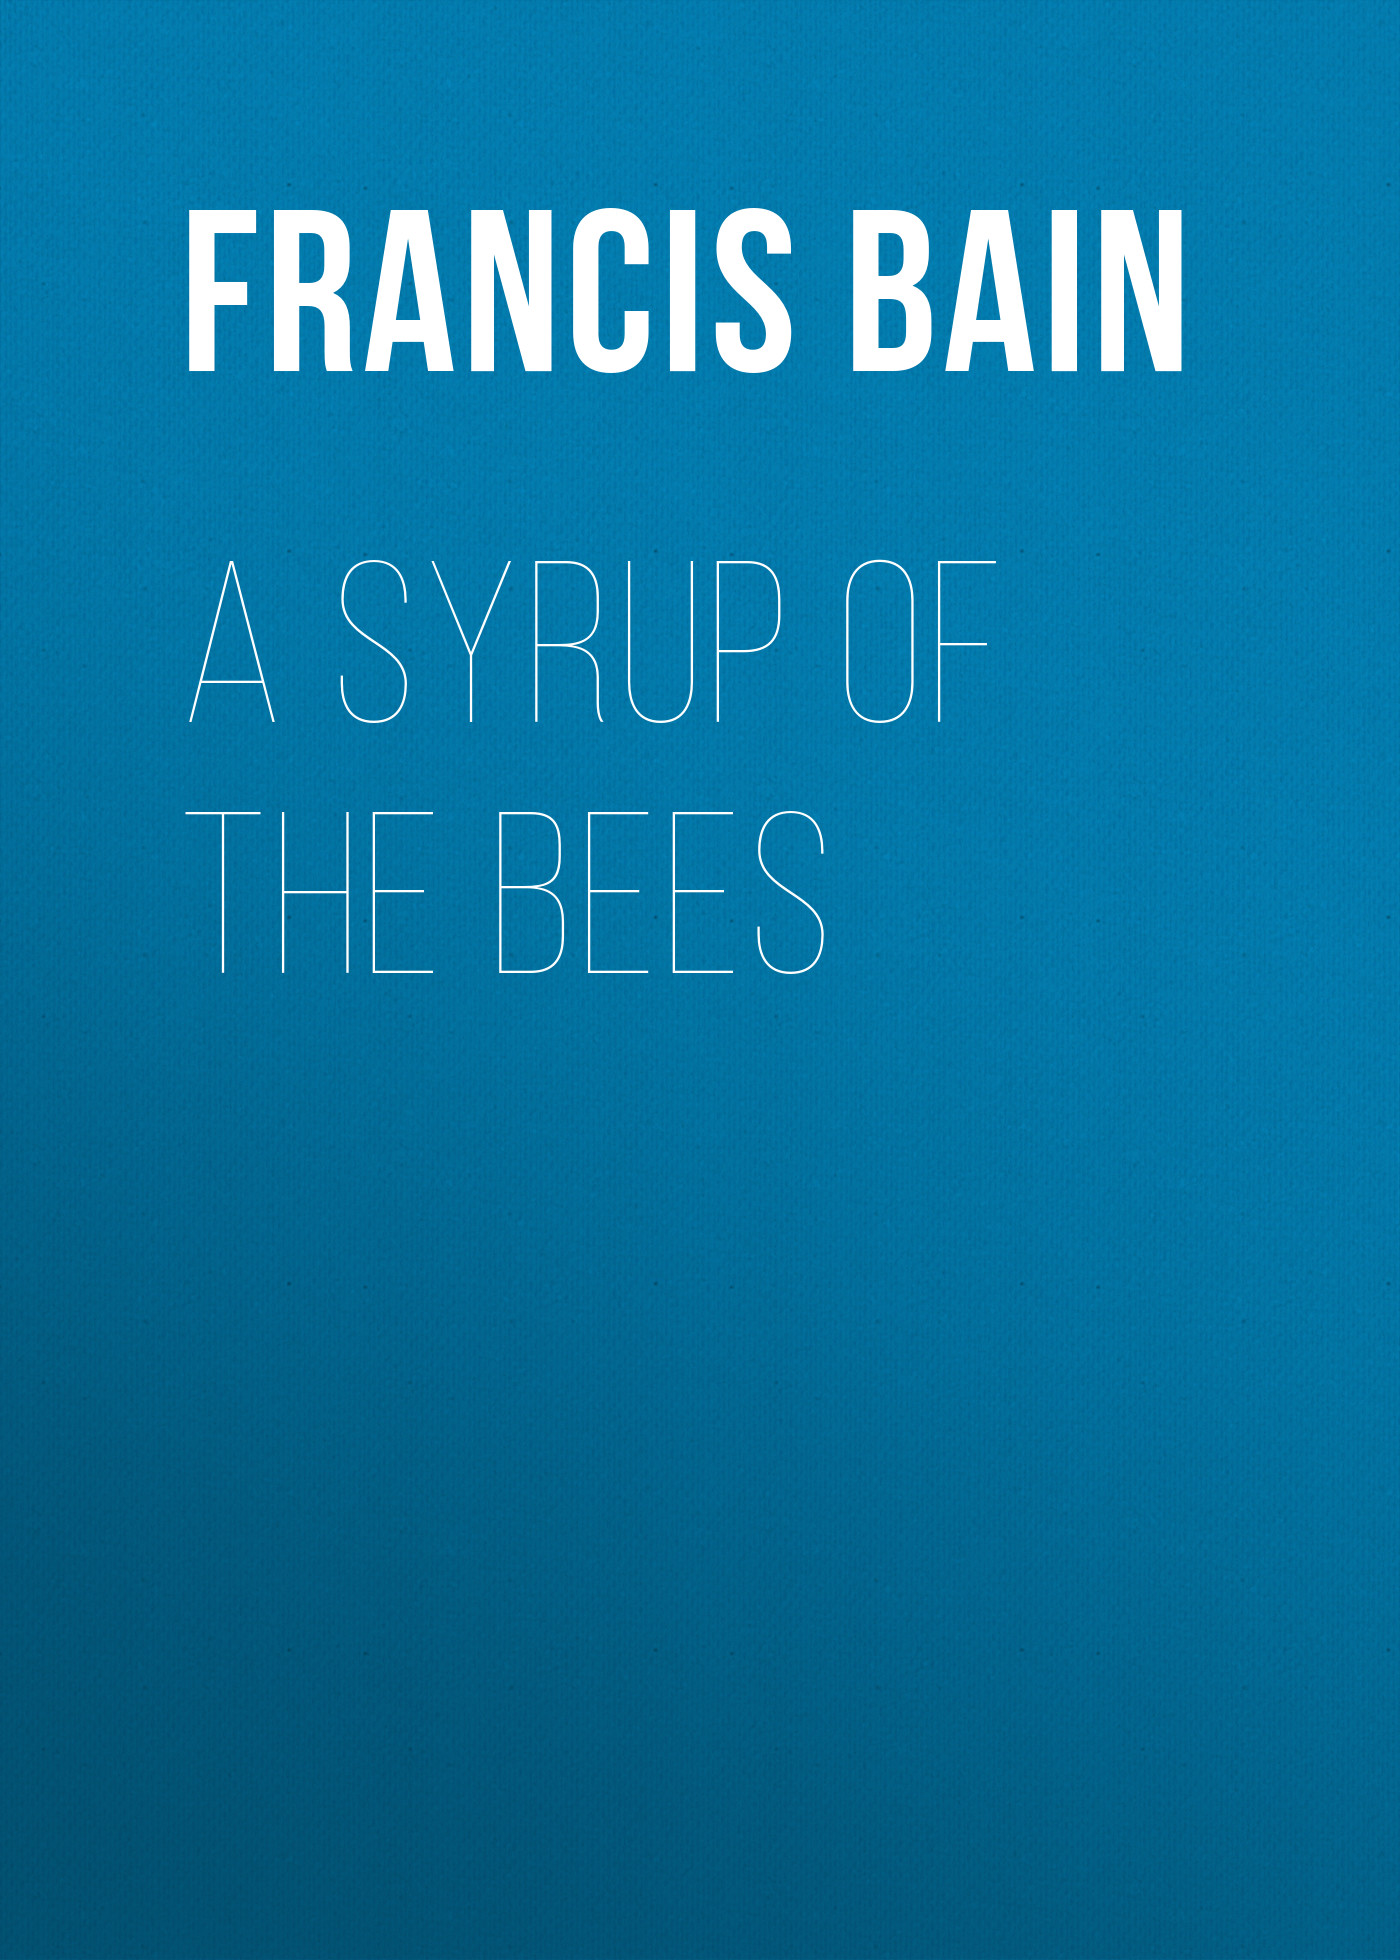 Книга A Syrup of the Bees из серии , созданная Francis Bain, может относится к жанру Зарубежная старинная литература, Зарубежная классика. Стоимость электронной книги A Syrup of the Bees с идентификатором 24167500 составляет 0.90 руб.